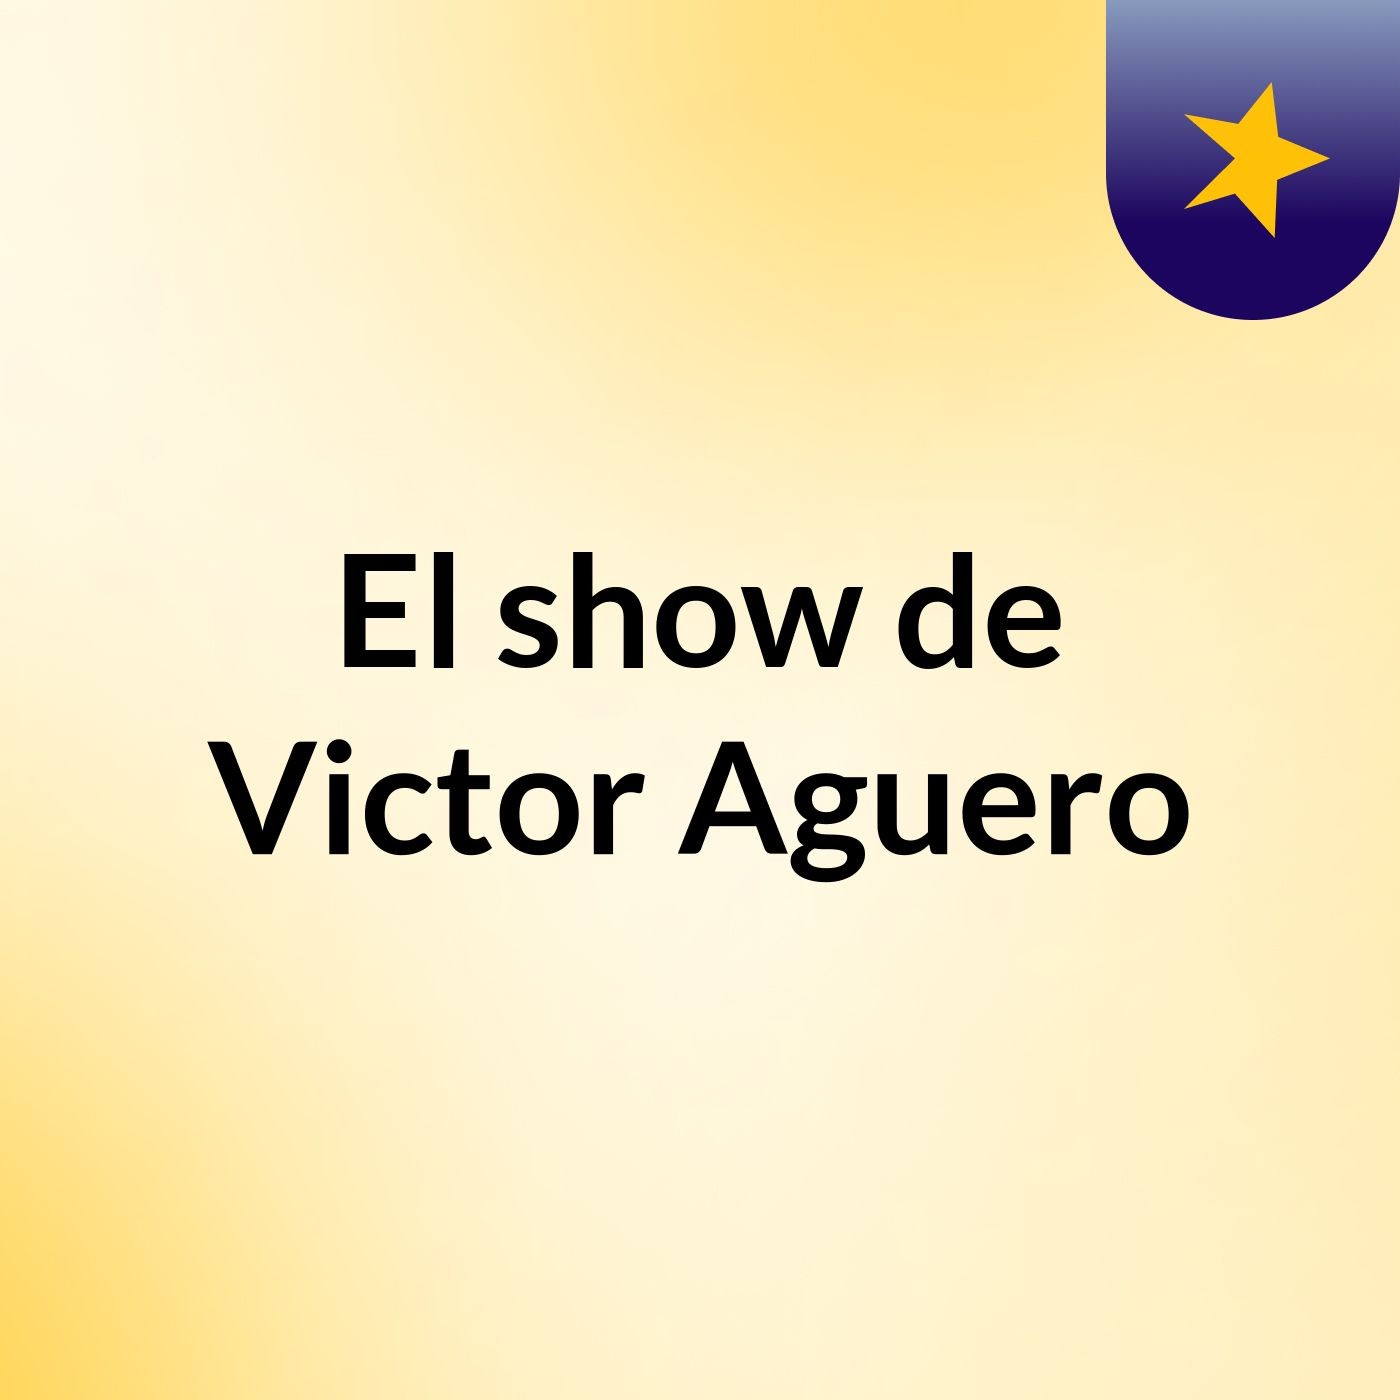 El show de Victor Aguero